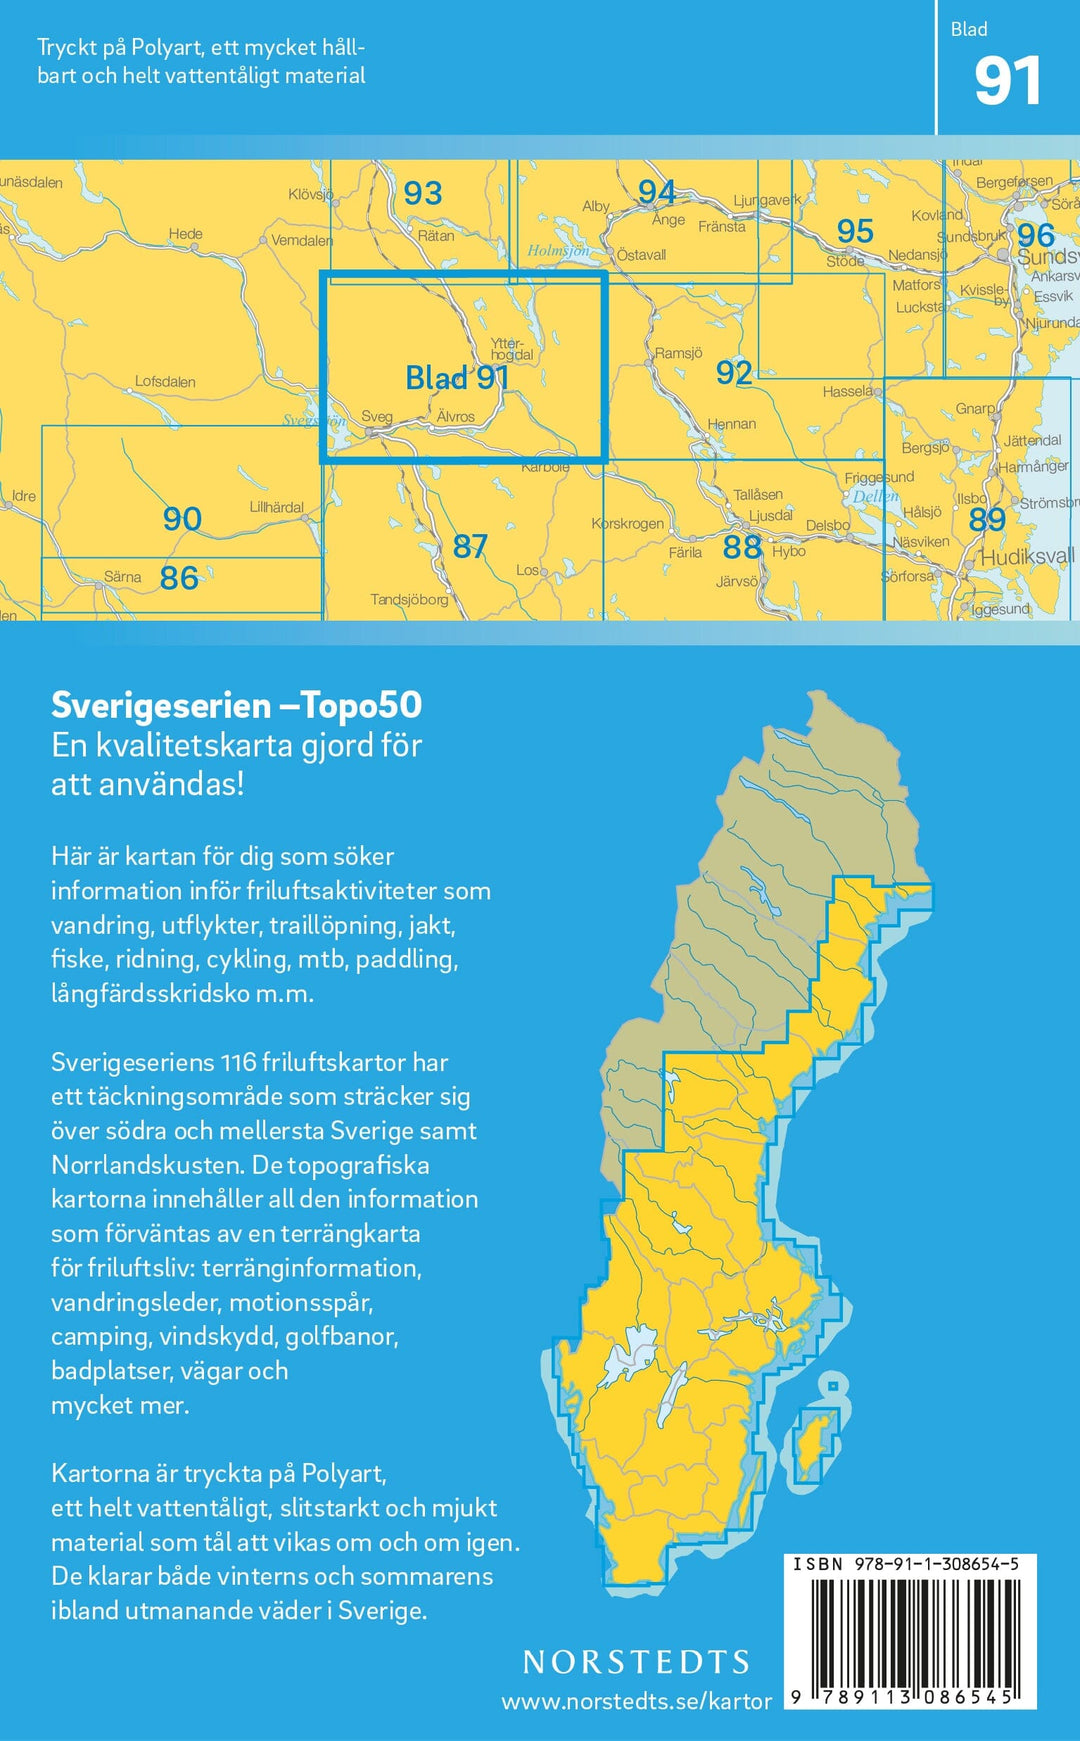 Carte topographique n° 91 - Ytterhogdal (Suède) | Norstedts - Sverigeserien carte pliée Norstedts 